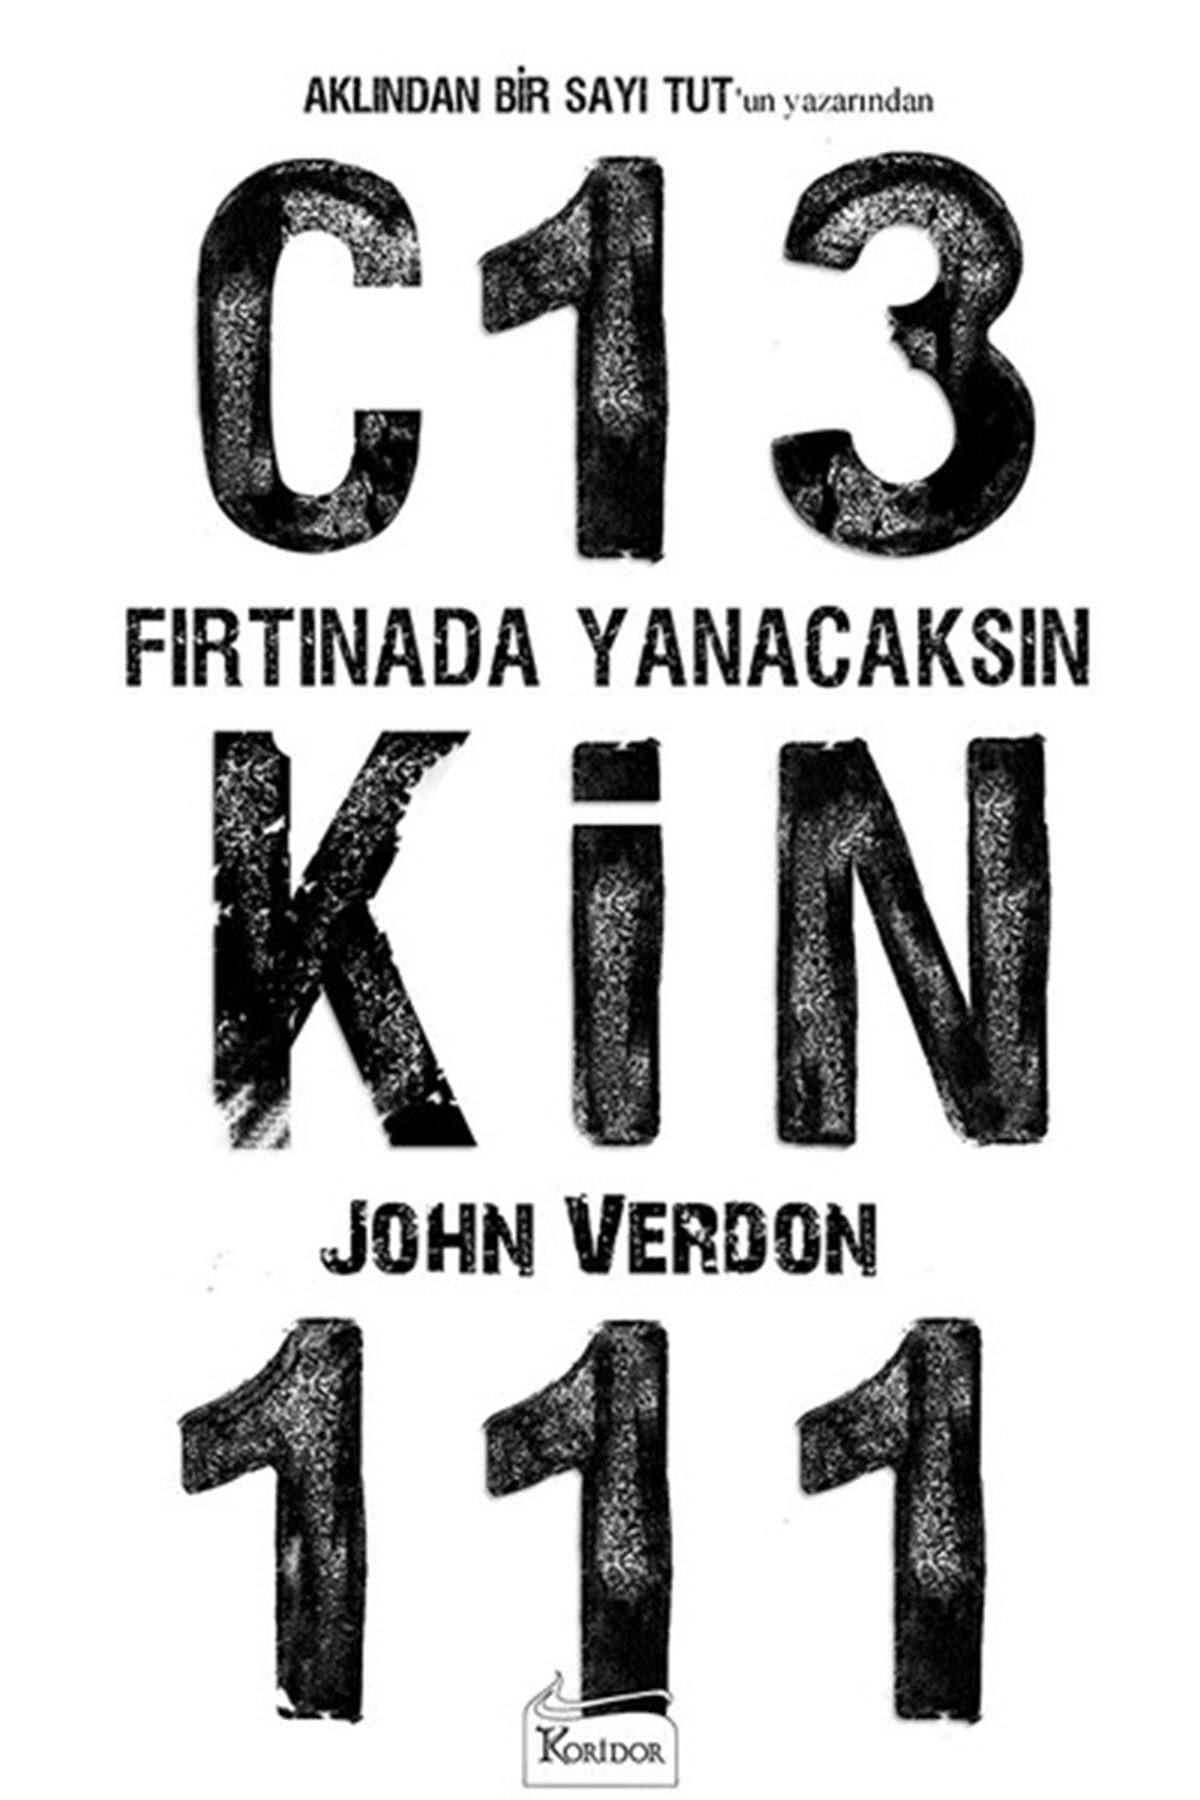 JOHN VERDON - FIRTINADA YANACAKSIN